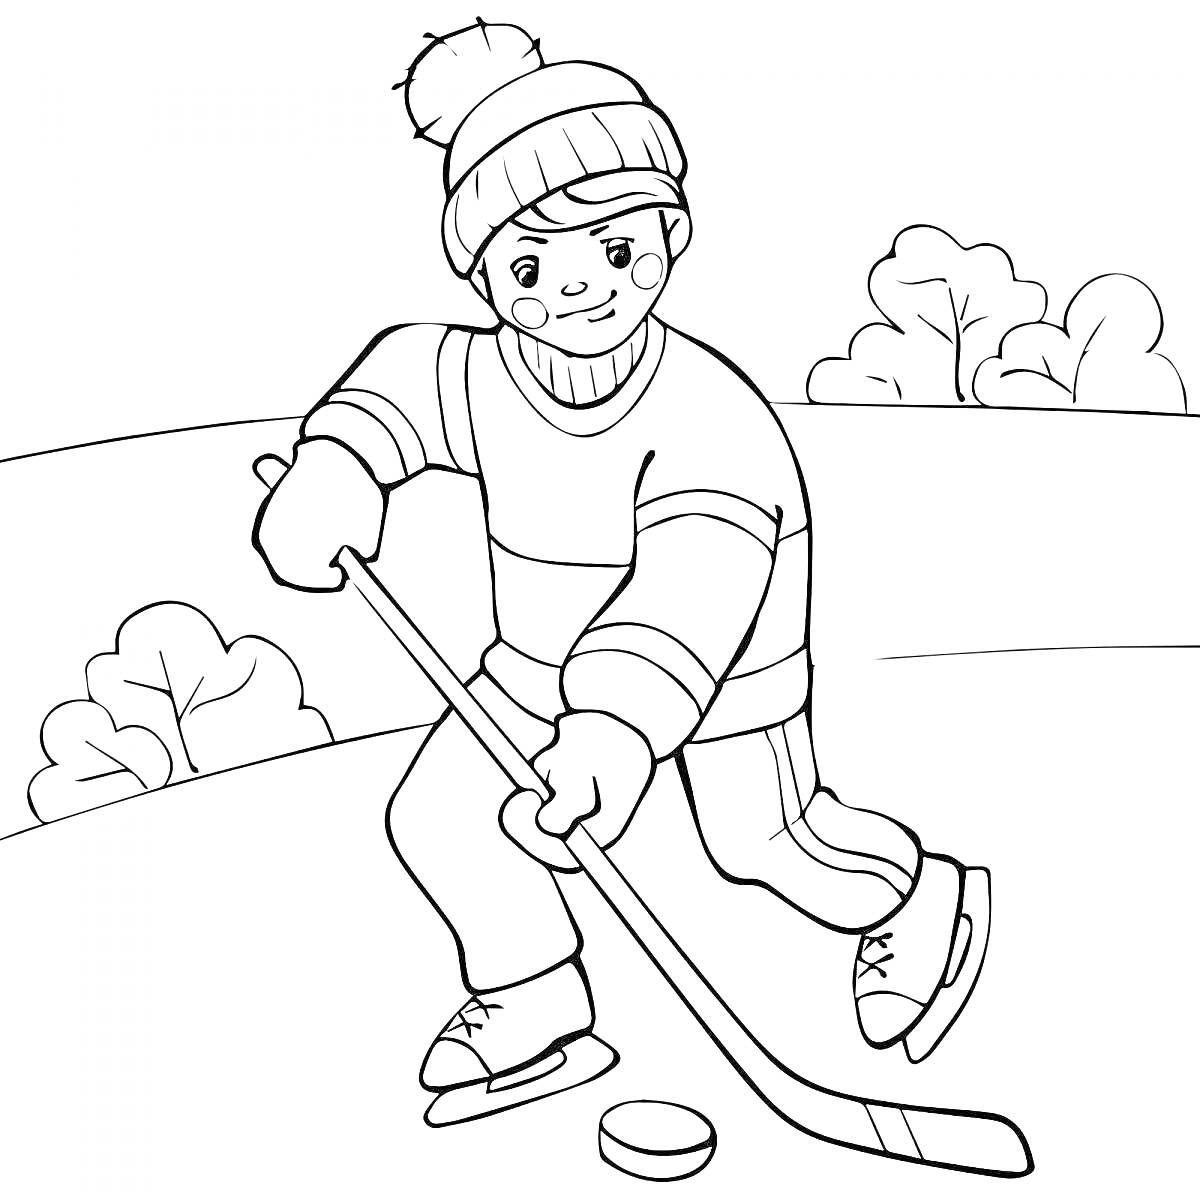 Раскраска Мальчик играет в хоккей на льду в зимней одежде с клюшкой и шайбой, на заднем плане кусты и снег